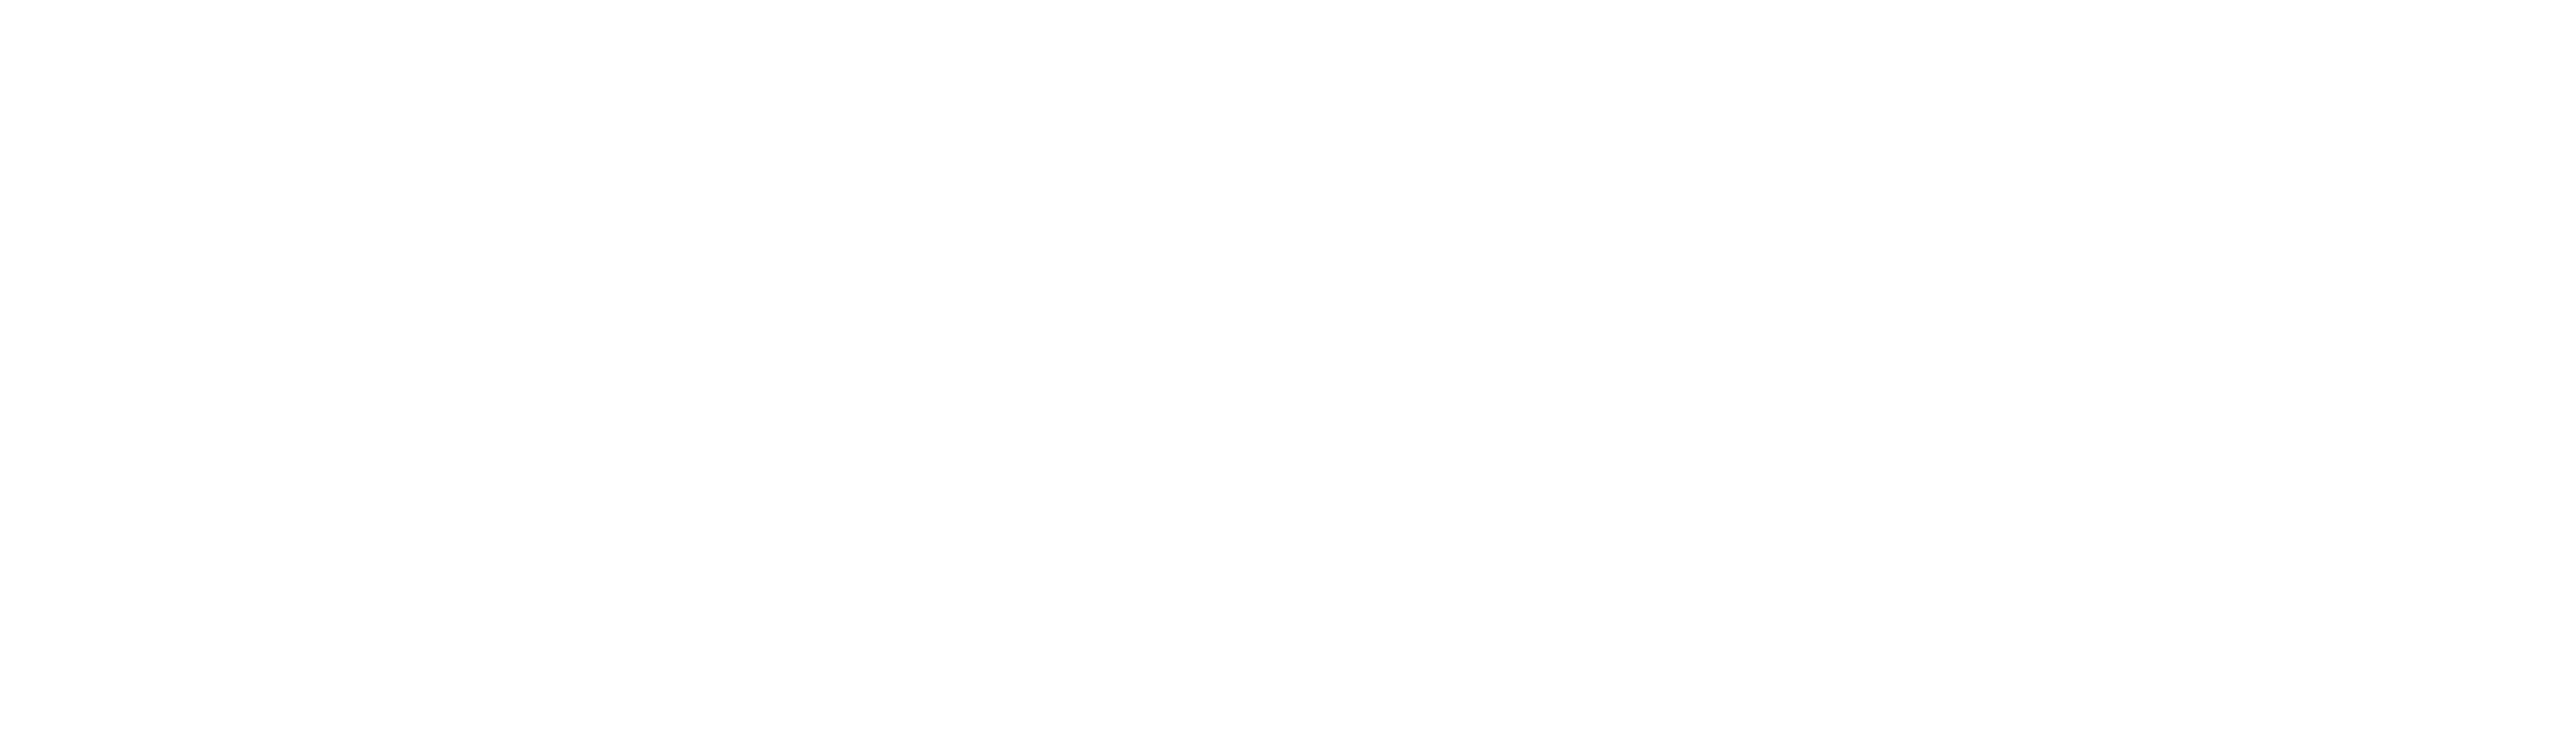 Accipio One logo in white.